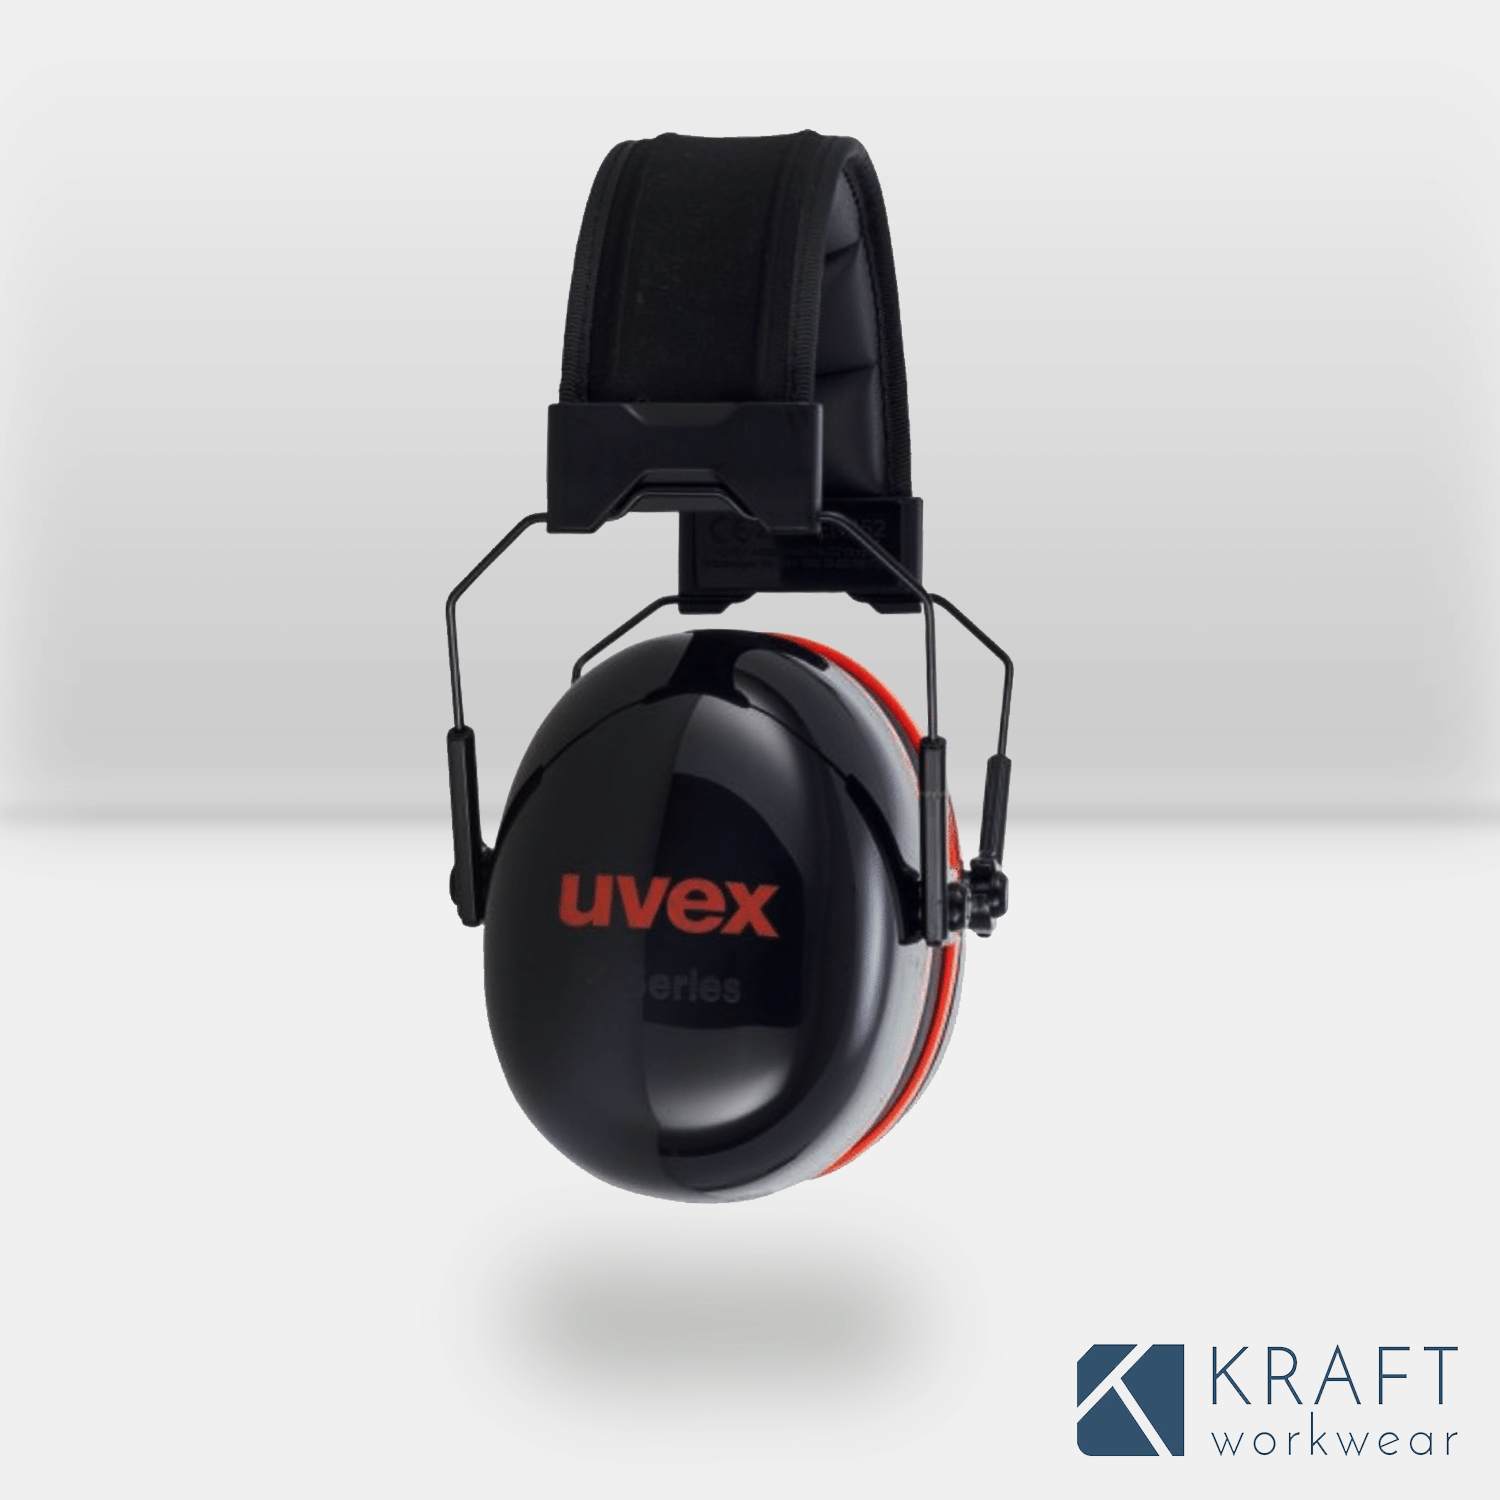 Casquette anti-heurt Uvex u-cap sport - Kraft Workwear